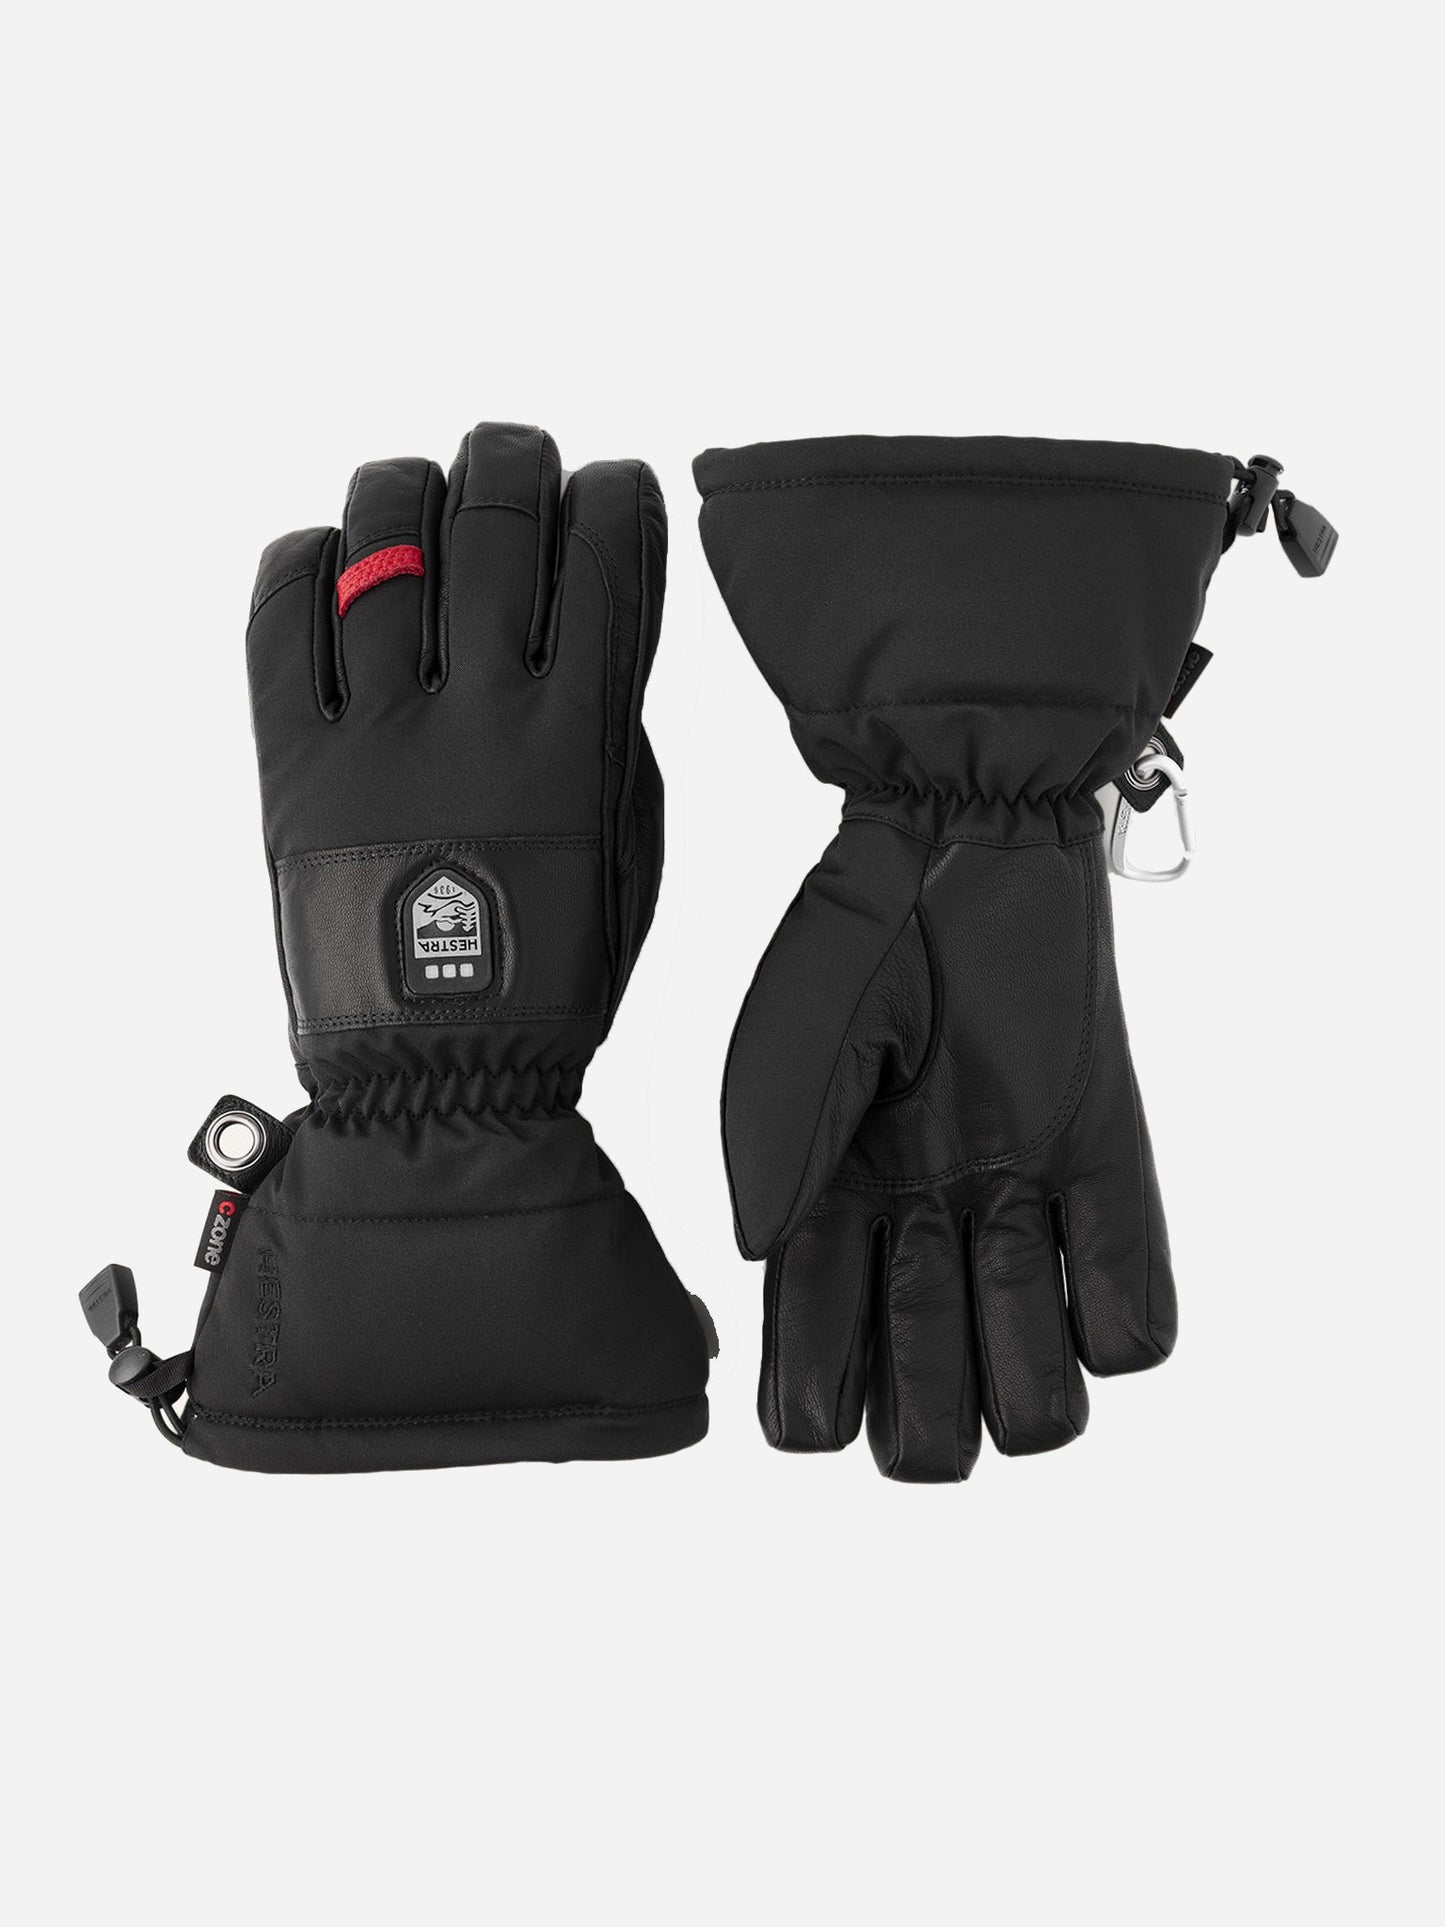 Hestra Power Heater Gauntlet Glove